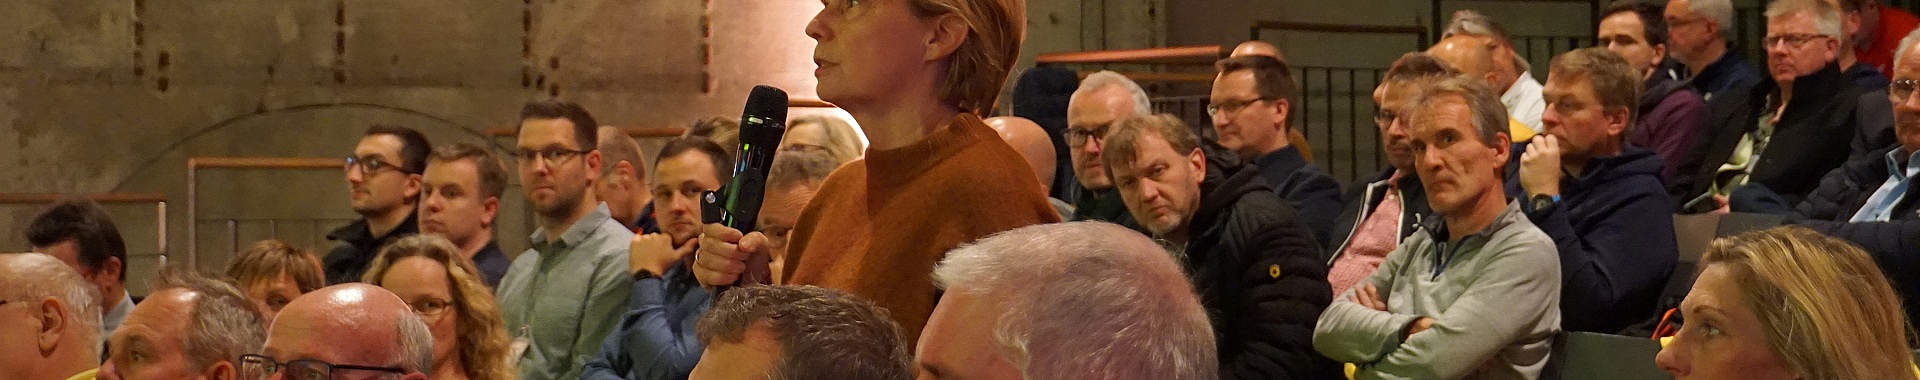 Eine Frau steht mit Mikrofon in einer sitzenden Zuschauermenge und spricht. 